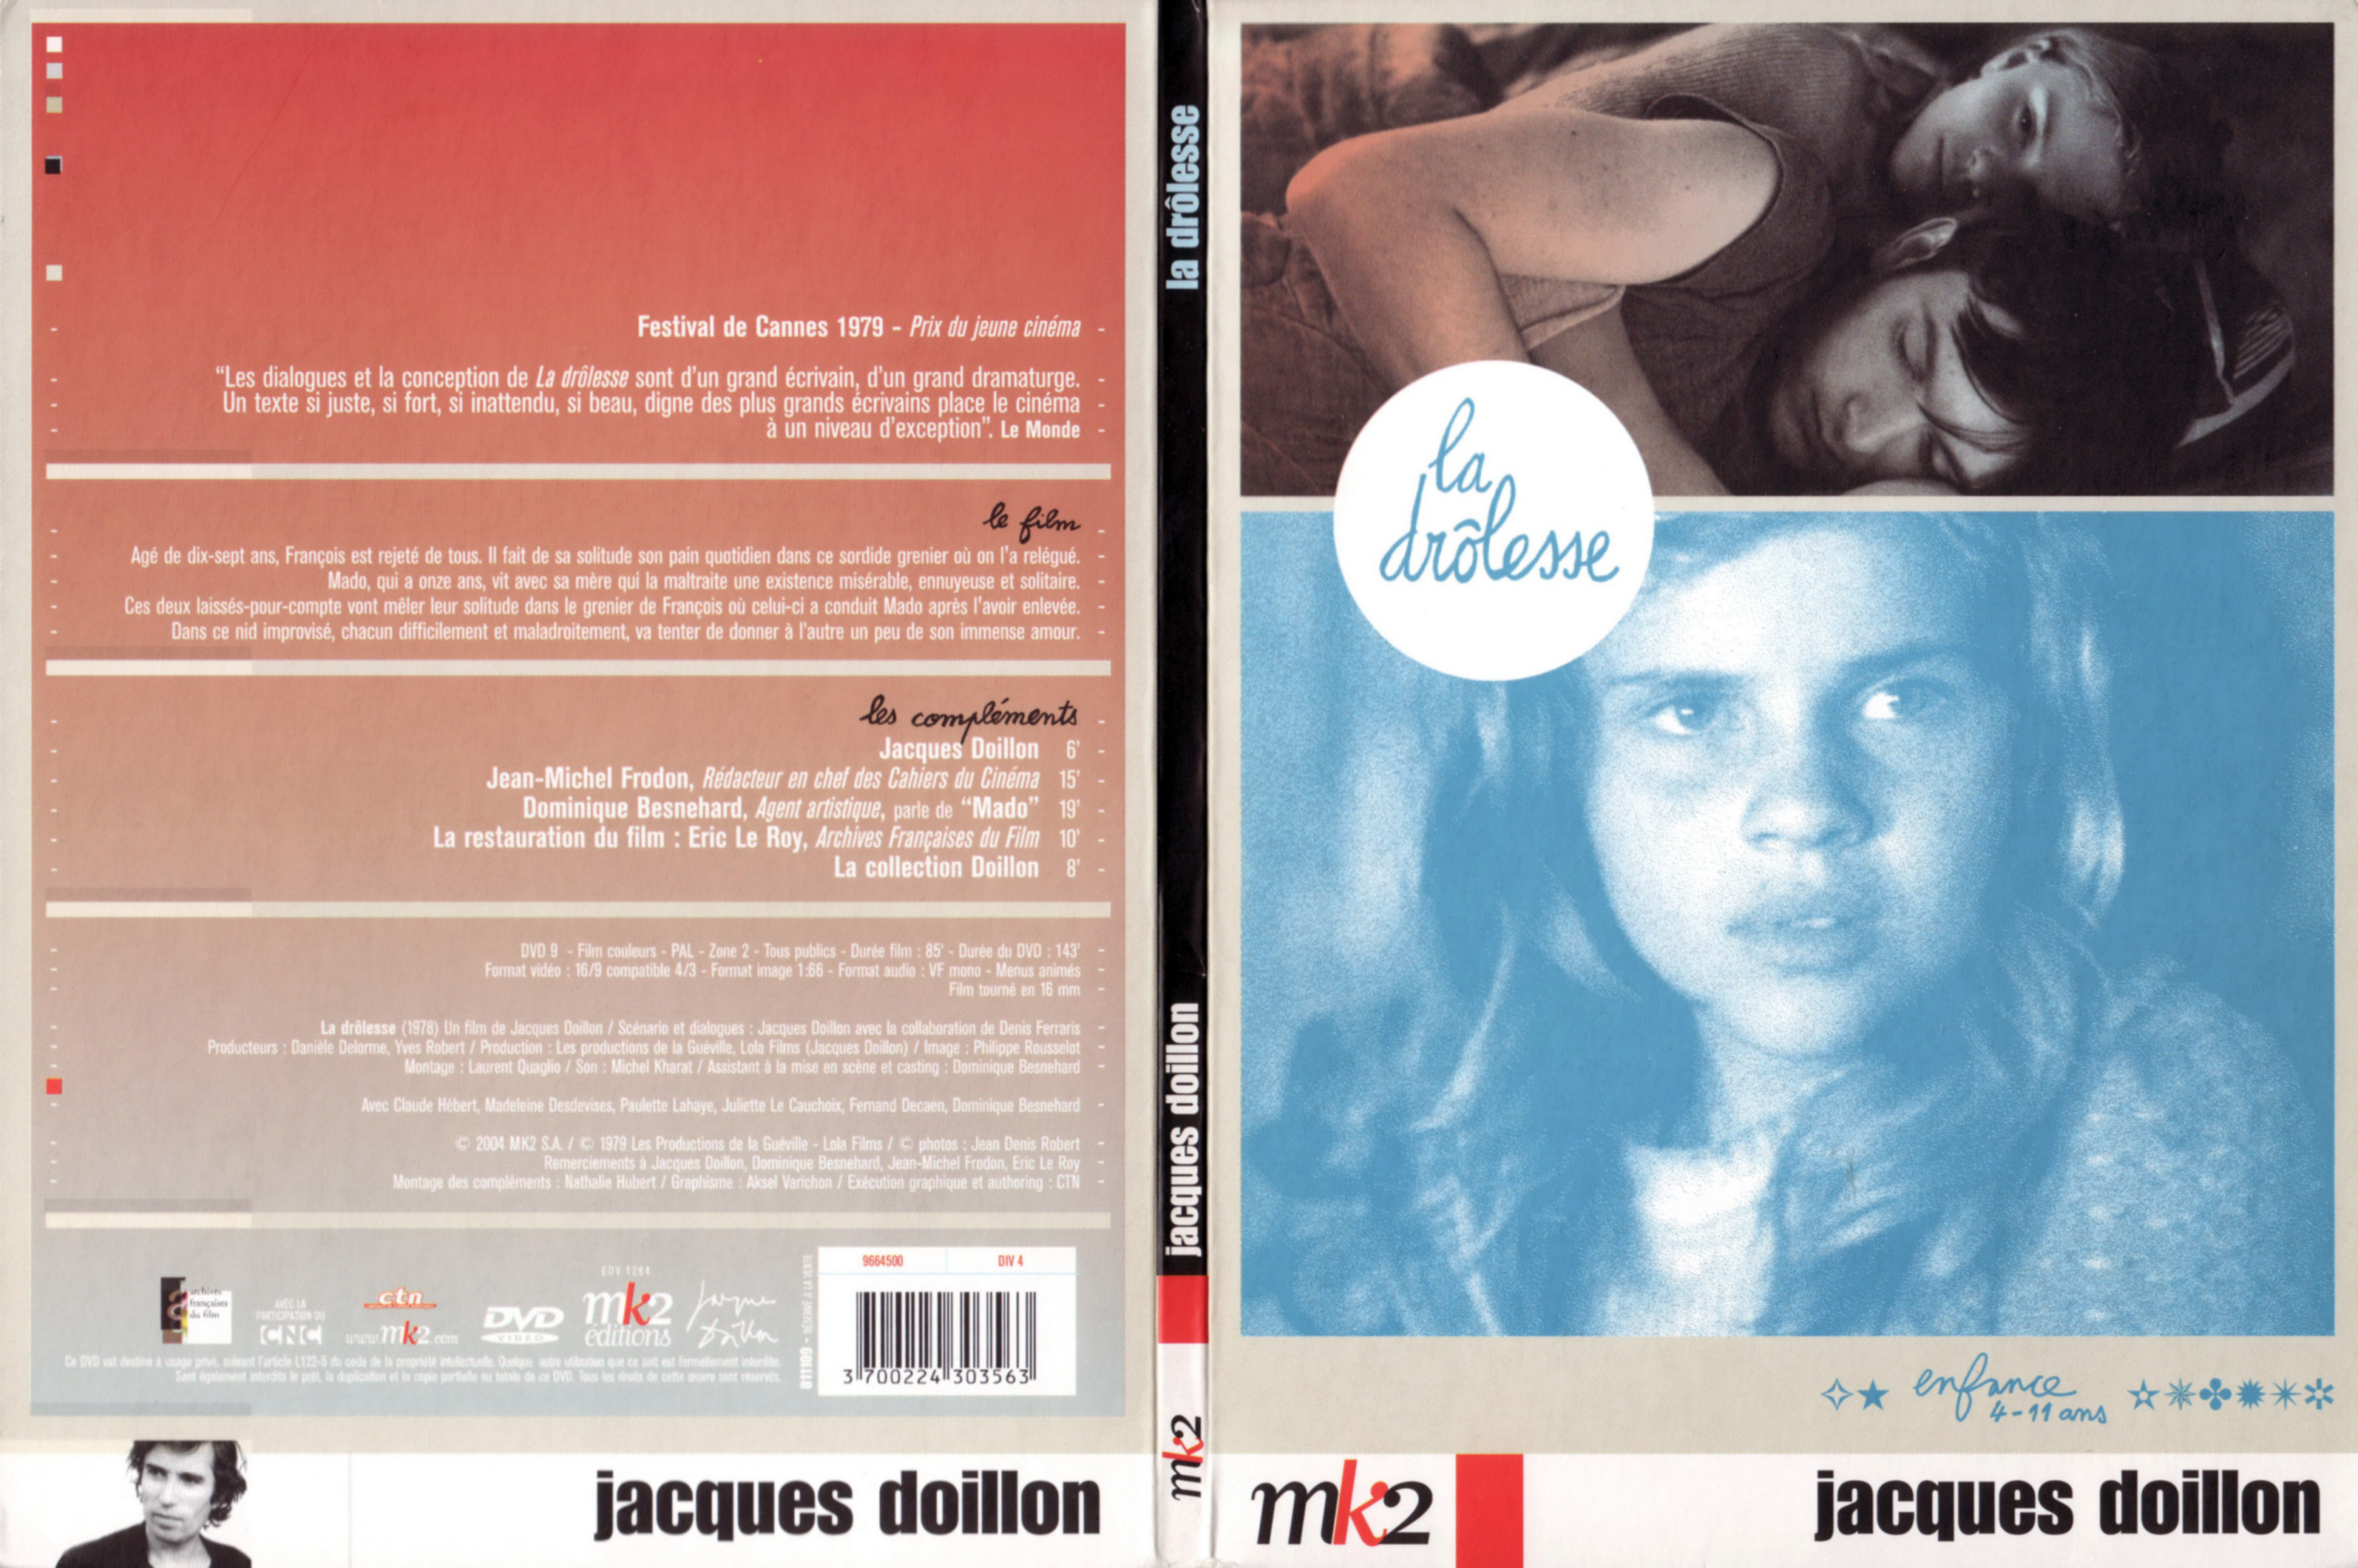 Jaquette DVD La drolesse